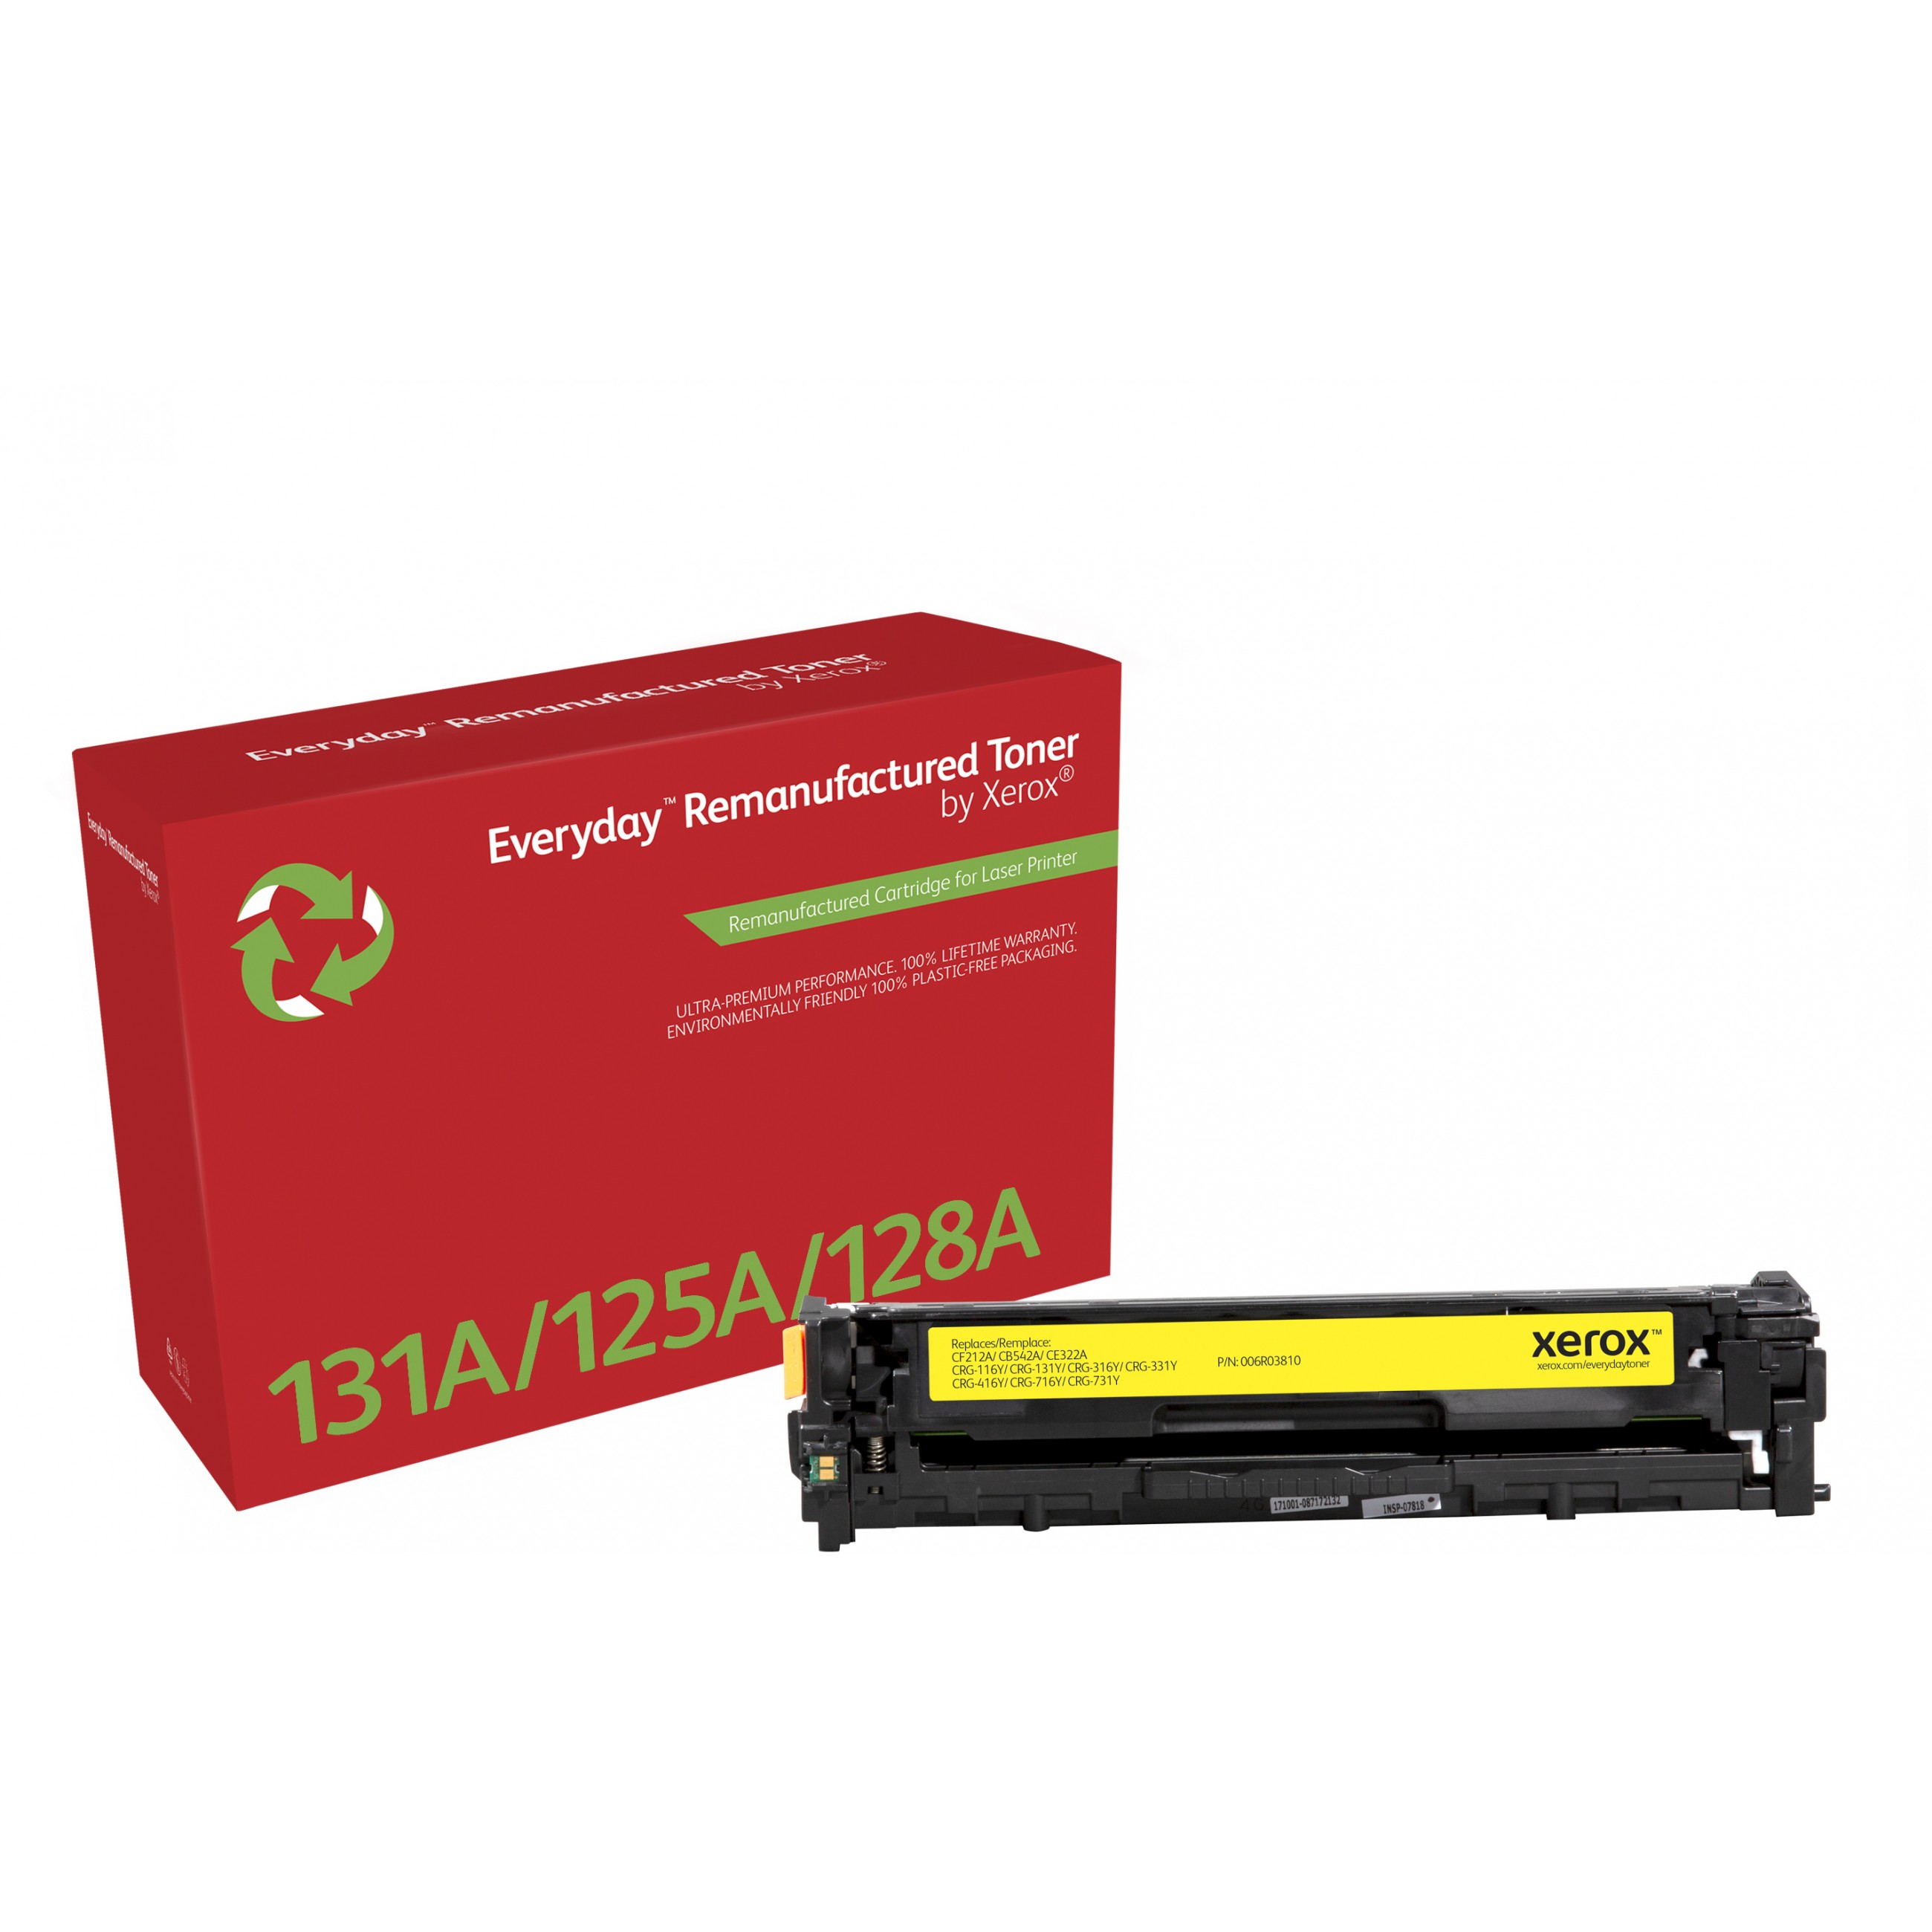 Everyday Wiederaufbereiteter Gelb Toner von Xerox für HP 131A (CF212A) Standard kapazität